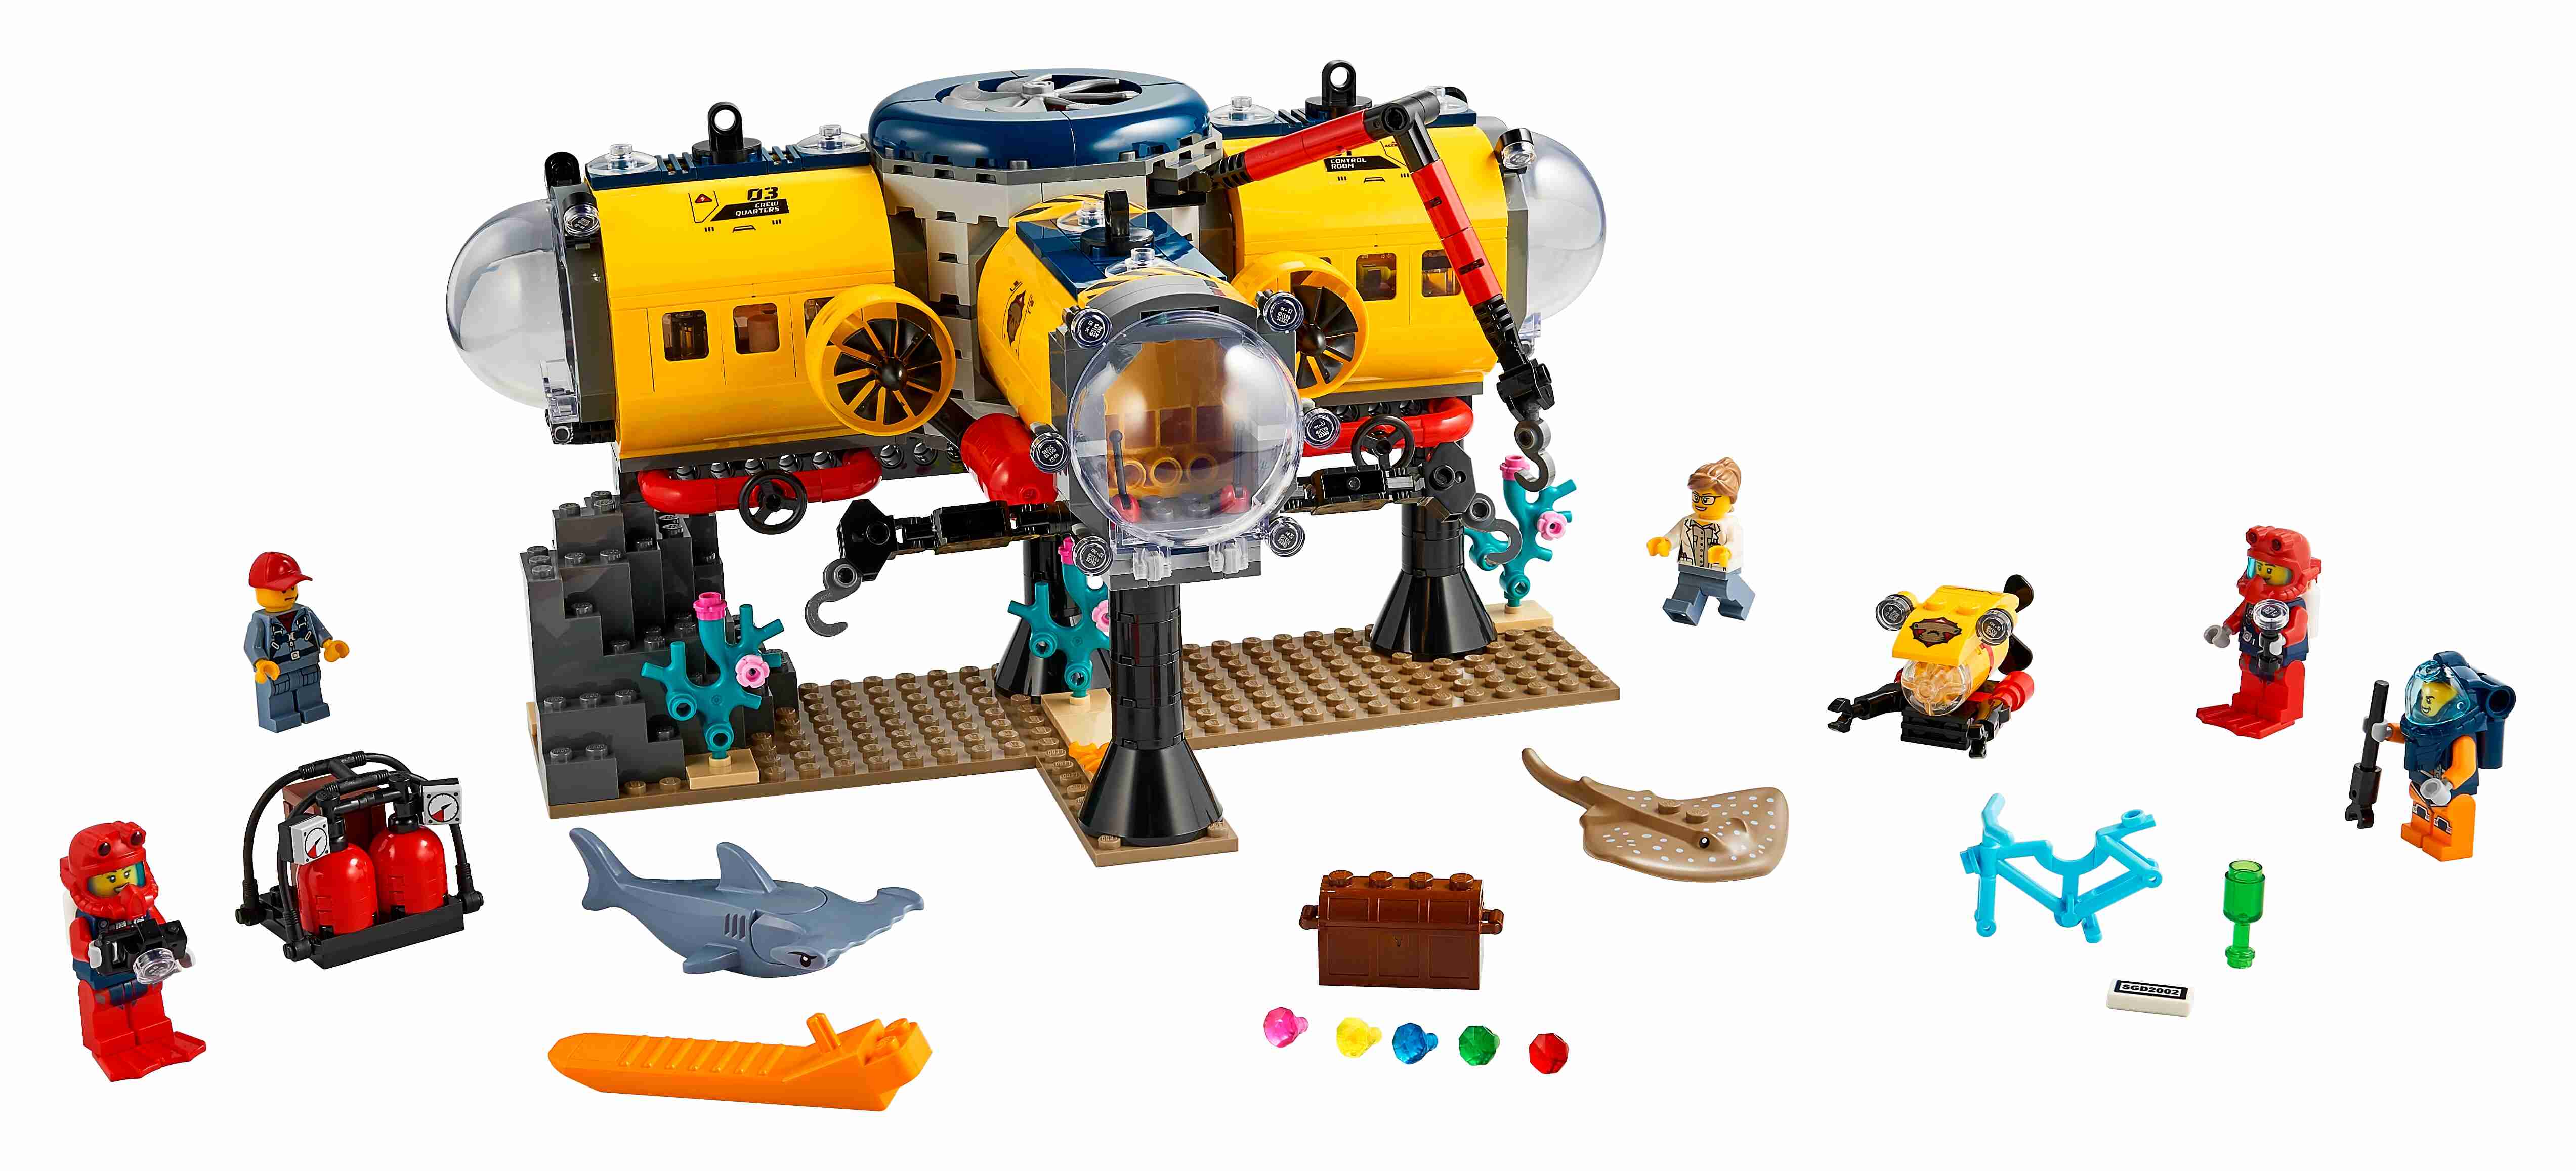 LEGO 60265 City Meeresforschungsbasis, U-Boot mit Figuren von Meerestieren